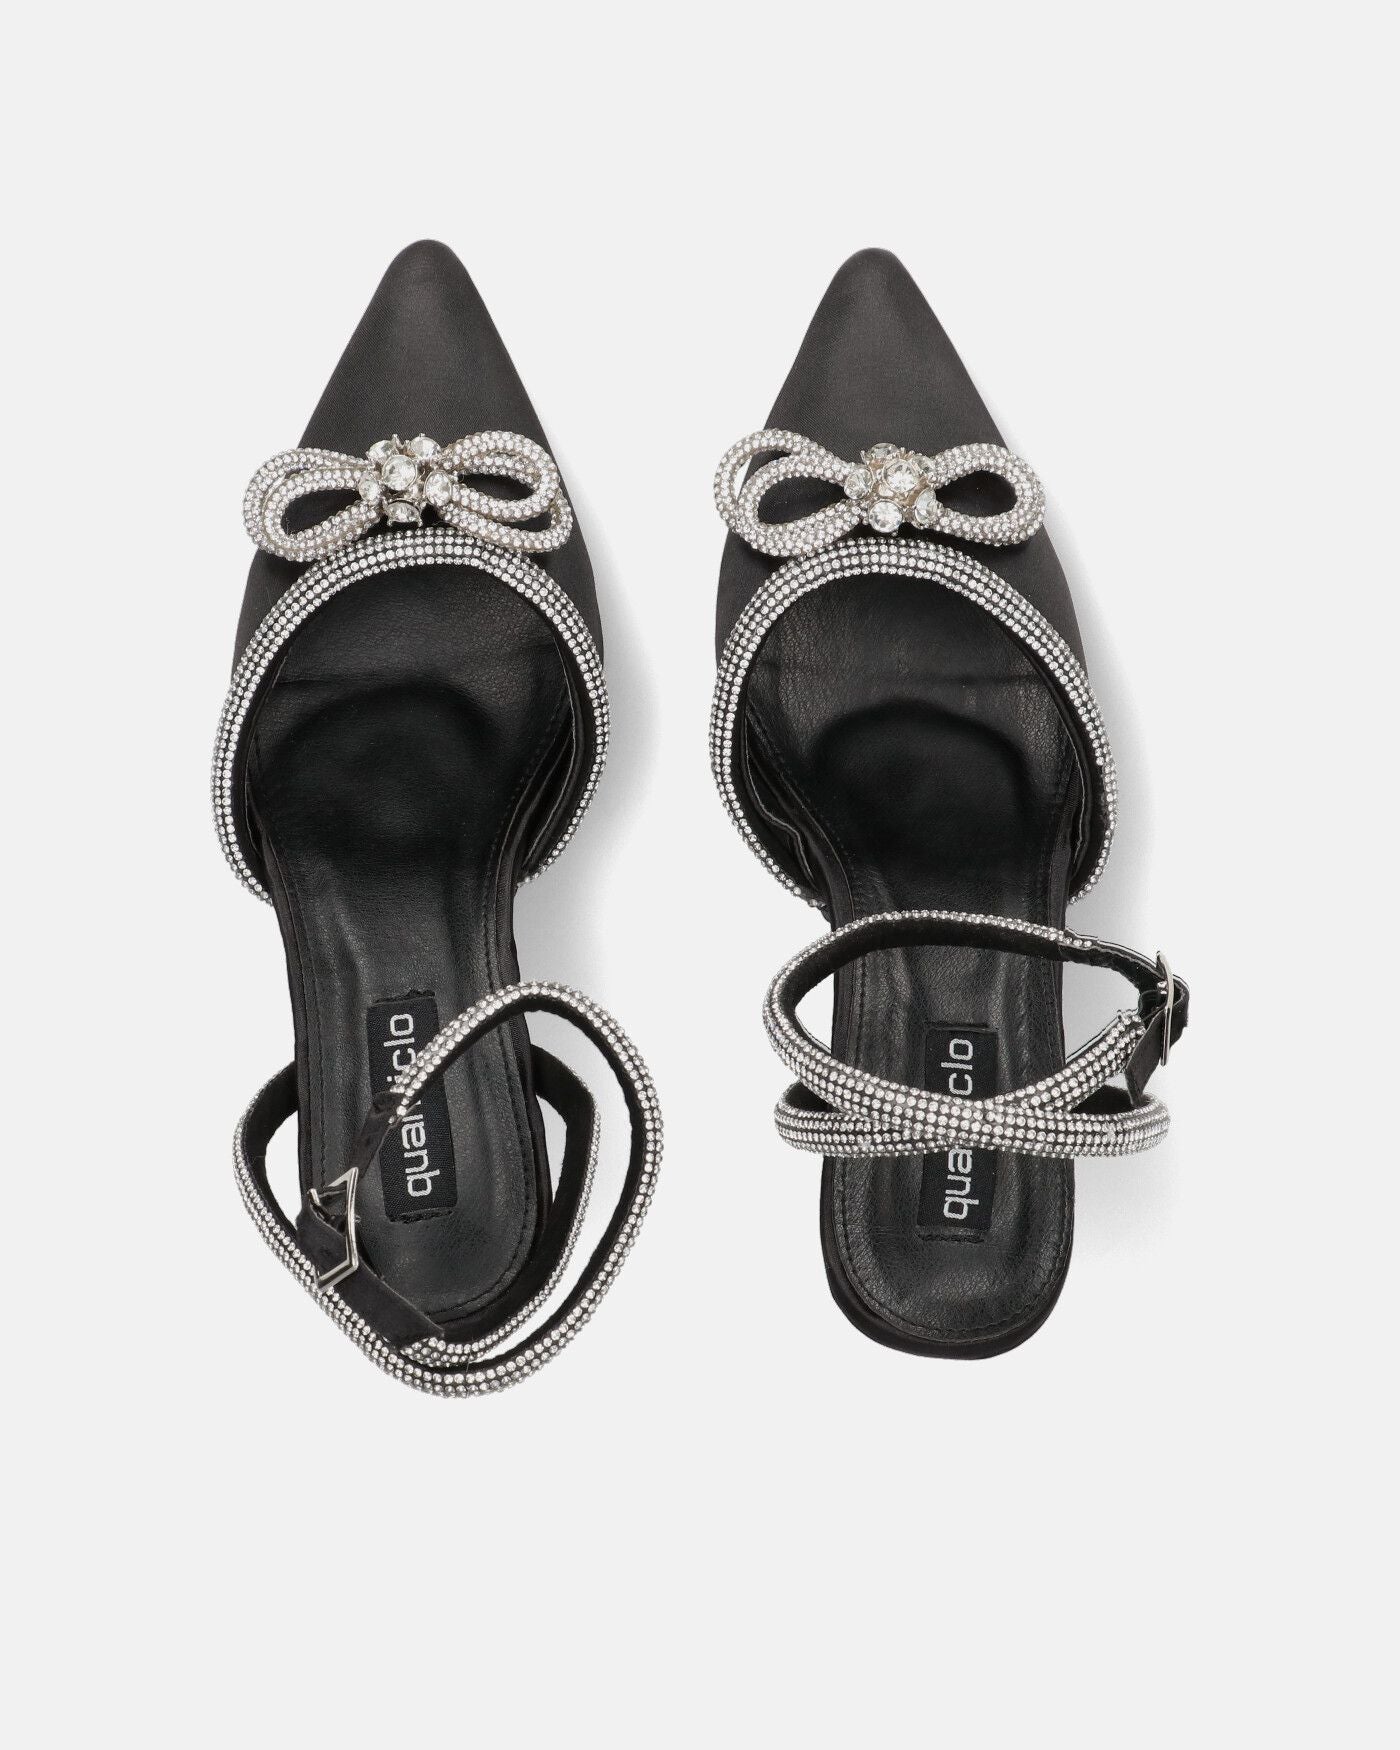 MARETA - scarpe con tacco nere con brillantini e fiocco glitter